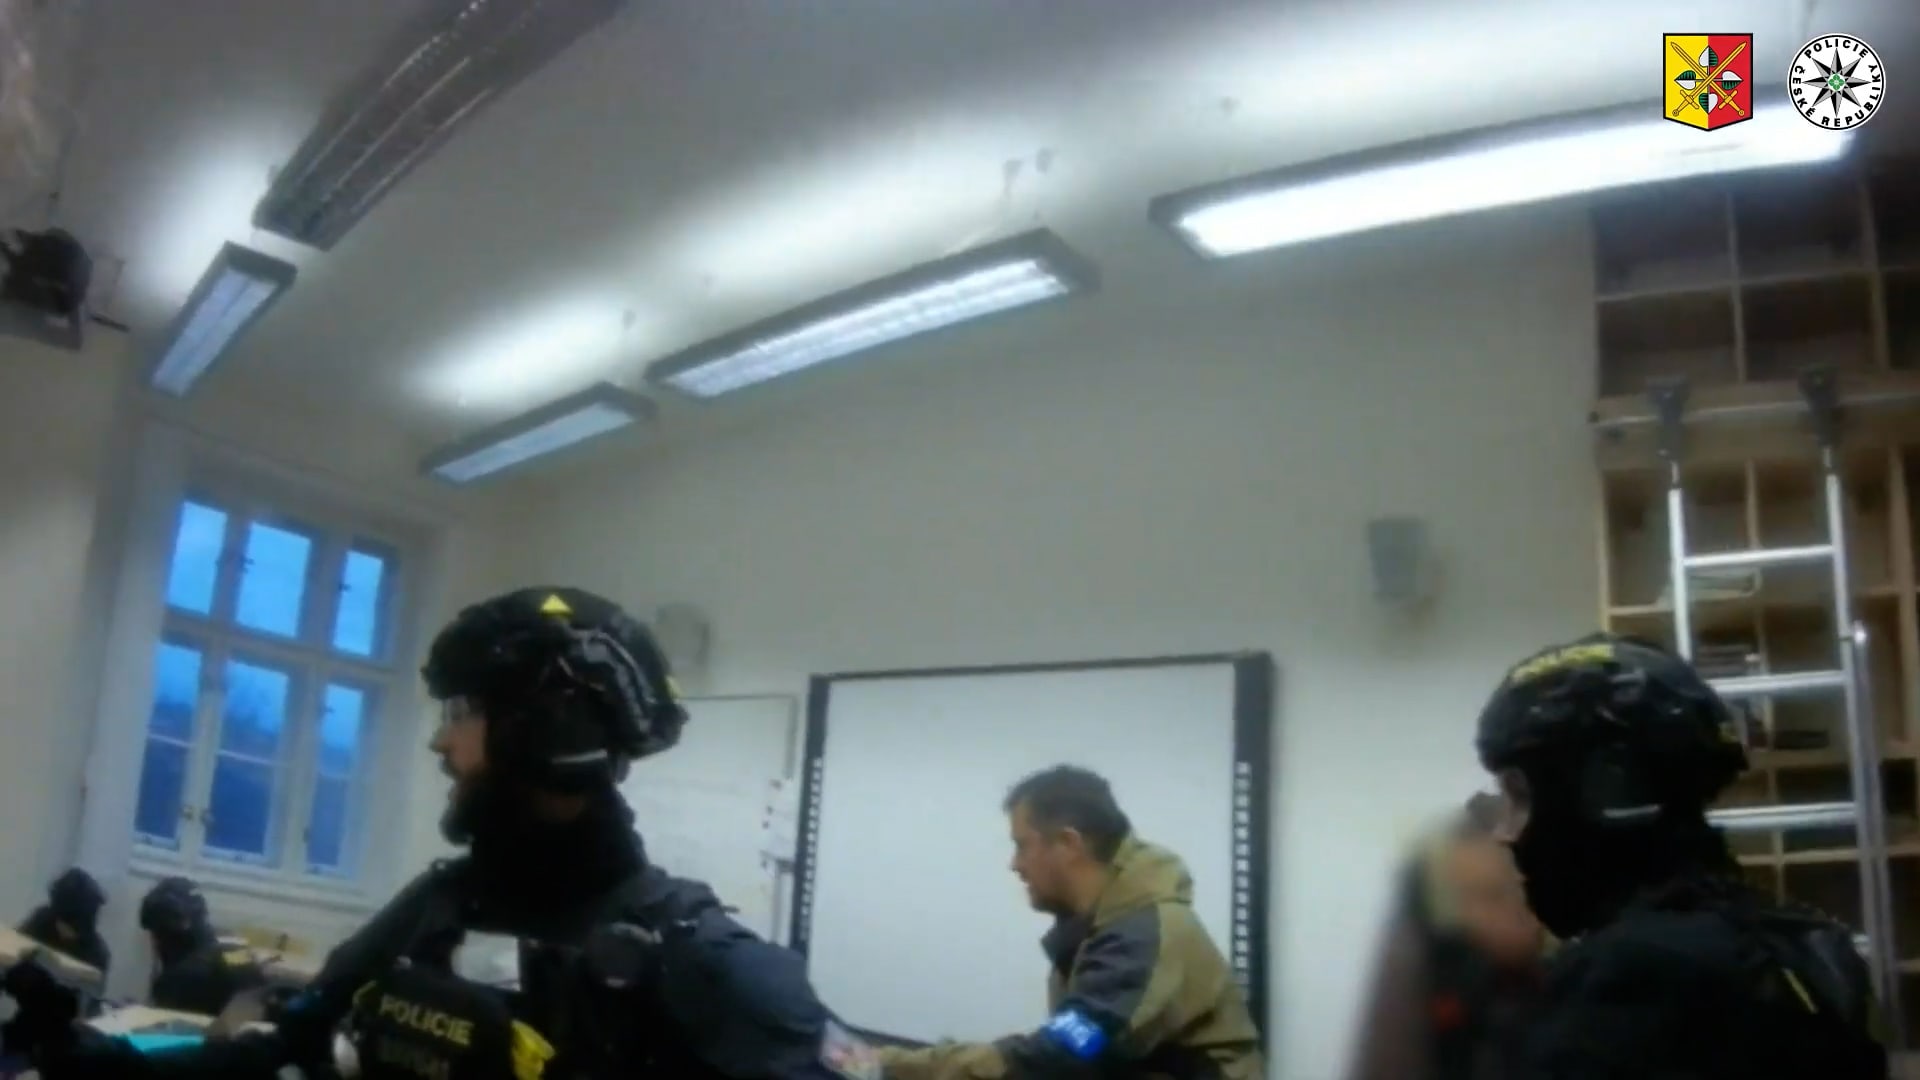 Policie zveřejnila dramatické video ze zásahu na Filozofické fakultě Univerzity Karlovy.